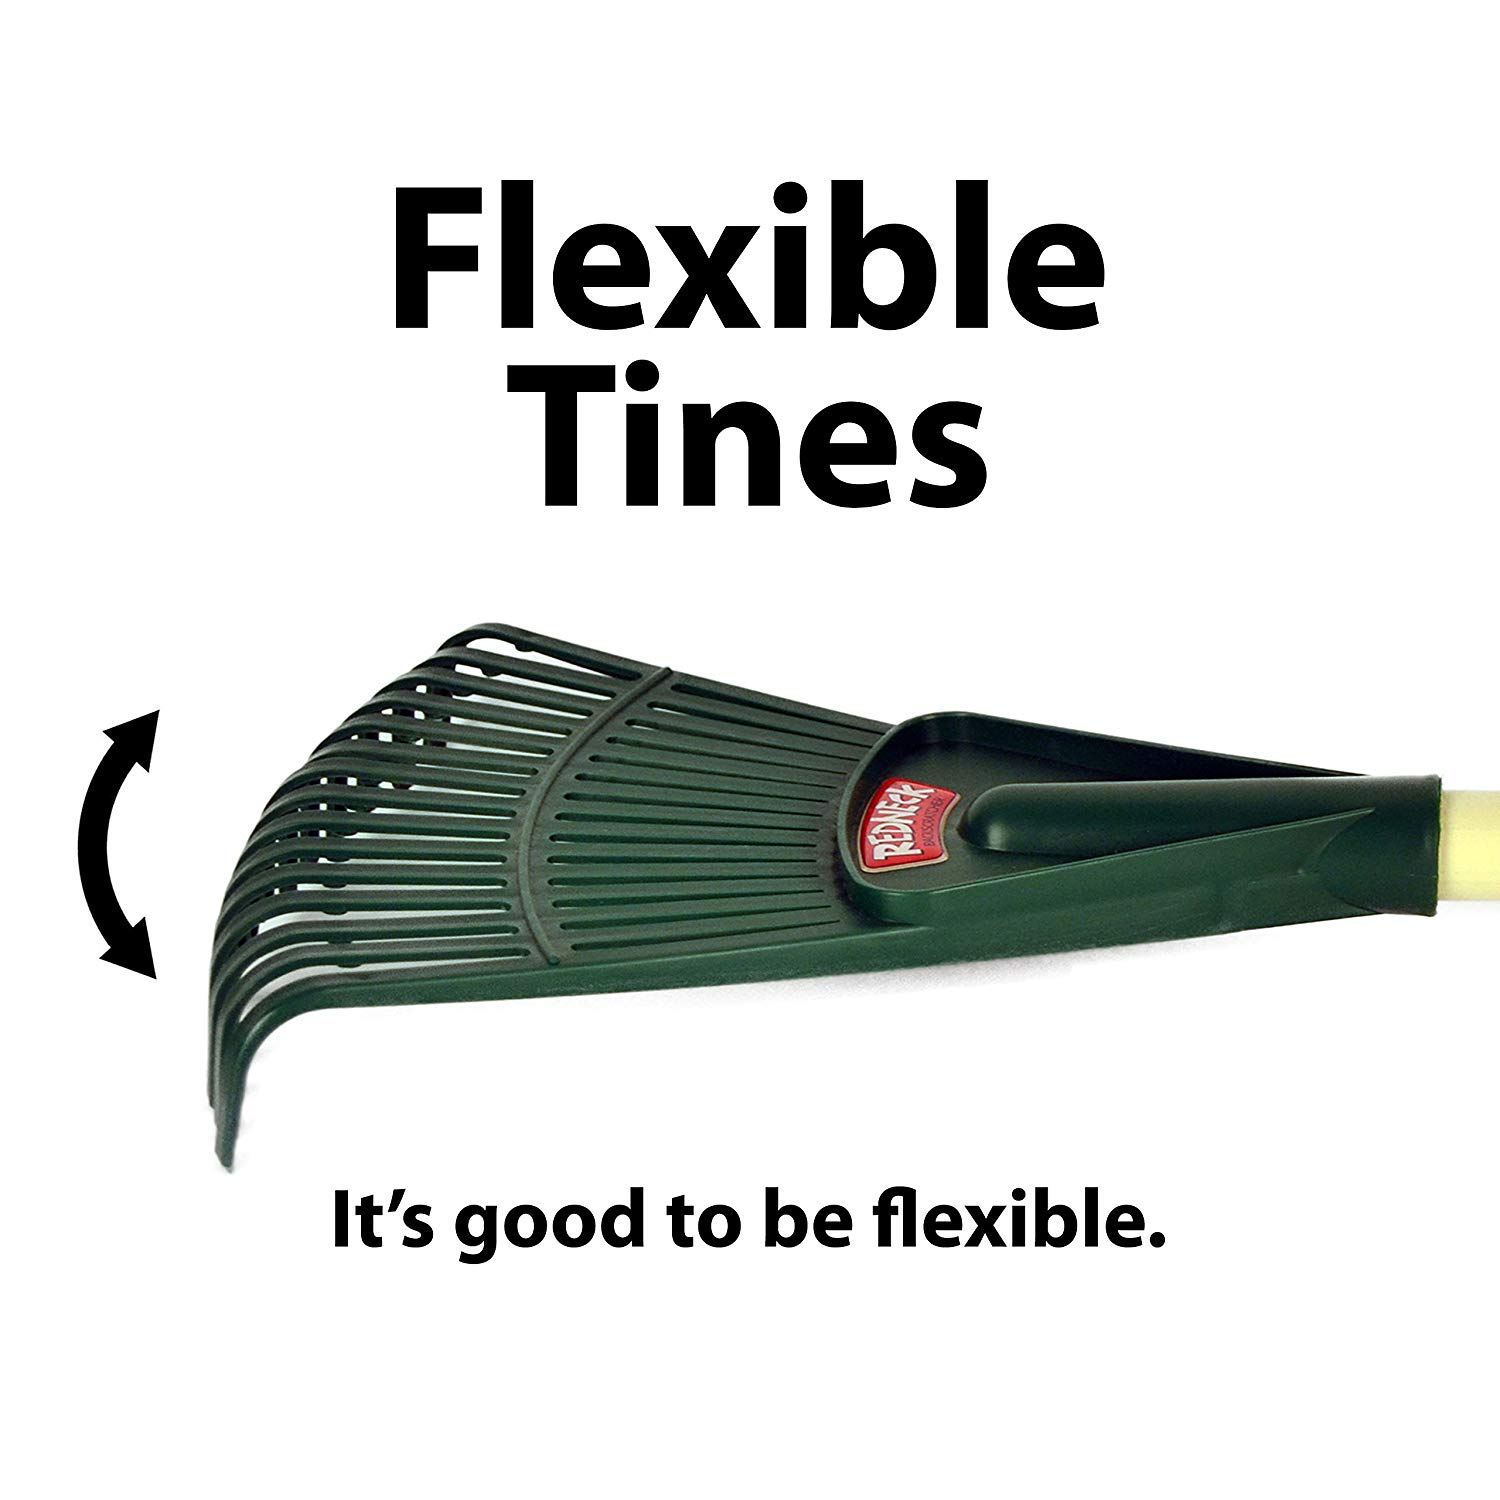 Flexible Tines